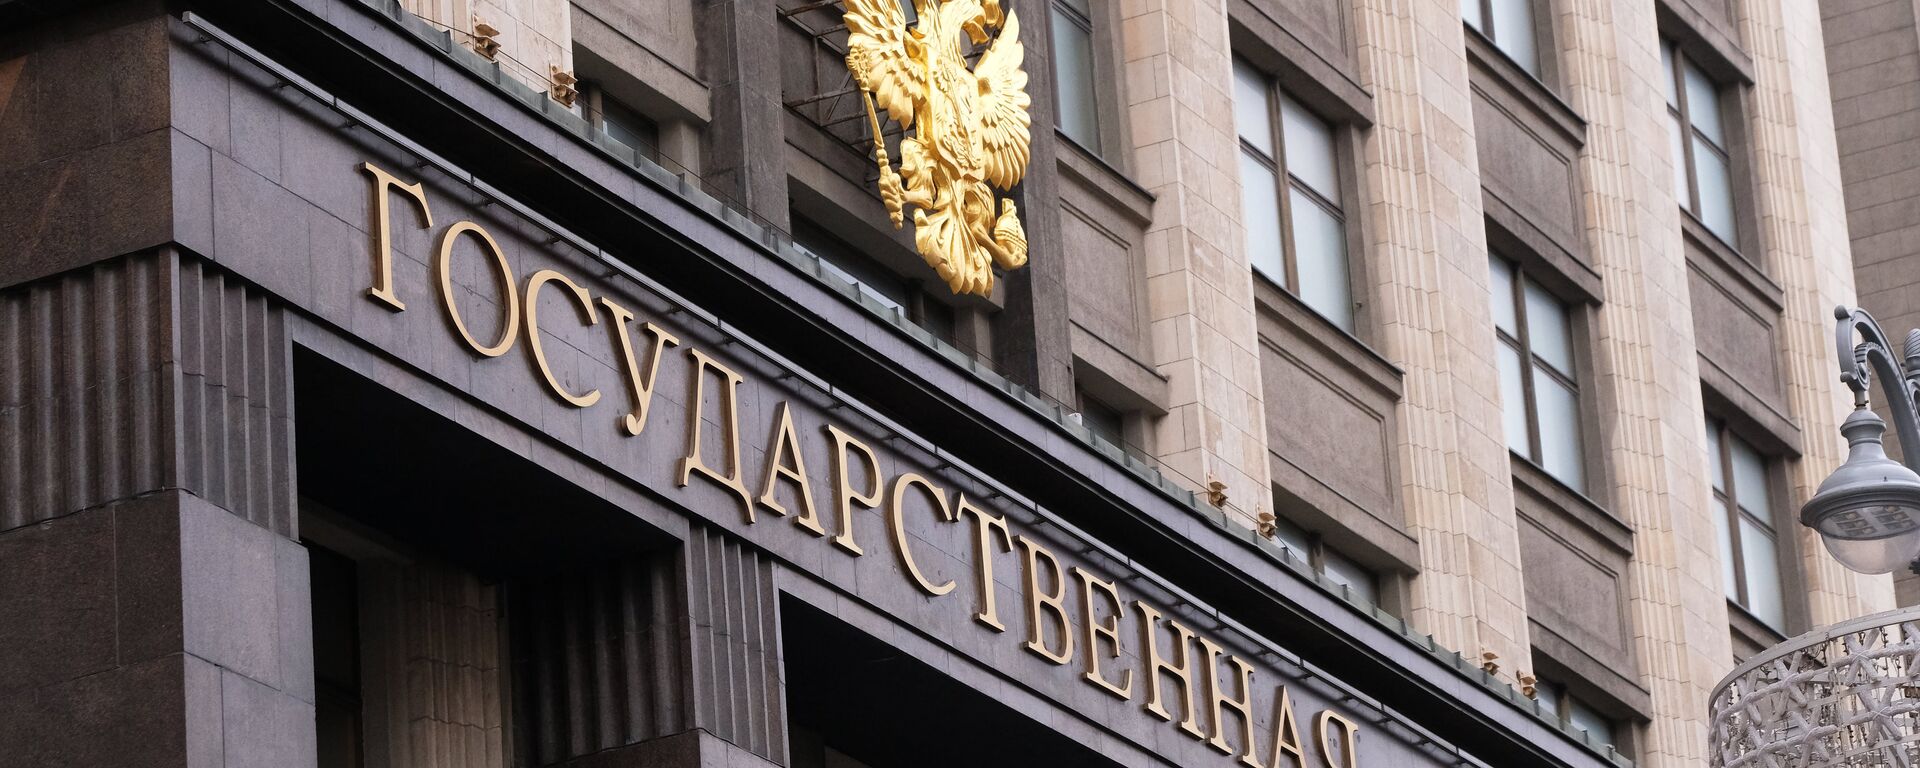 Зграда Државне думе Русије у Москви - Sputnik Србија, 1920, 01.03.2021